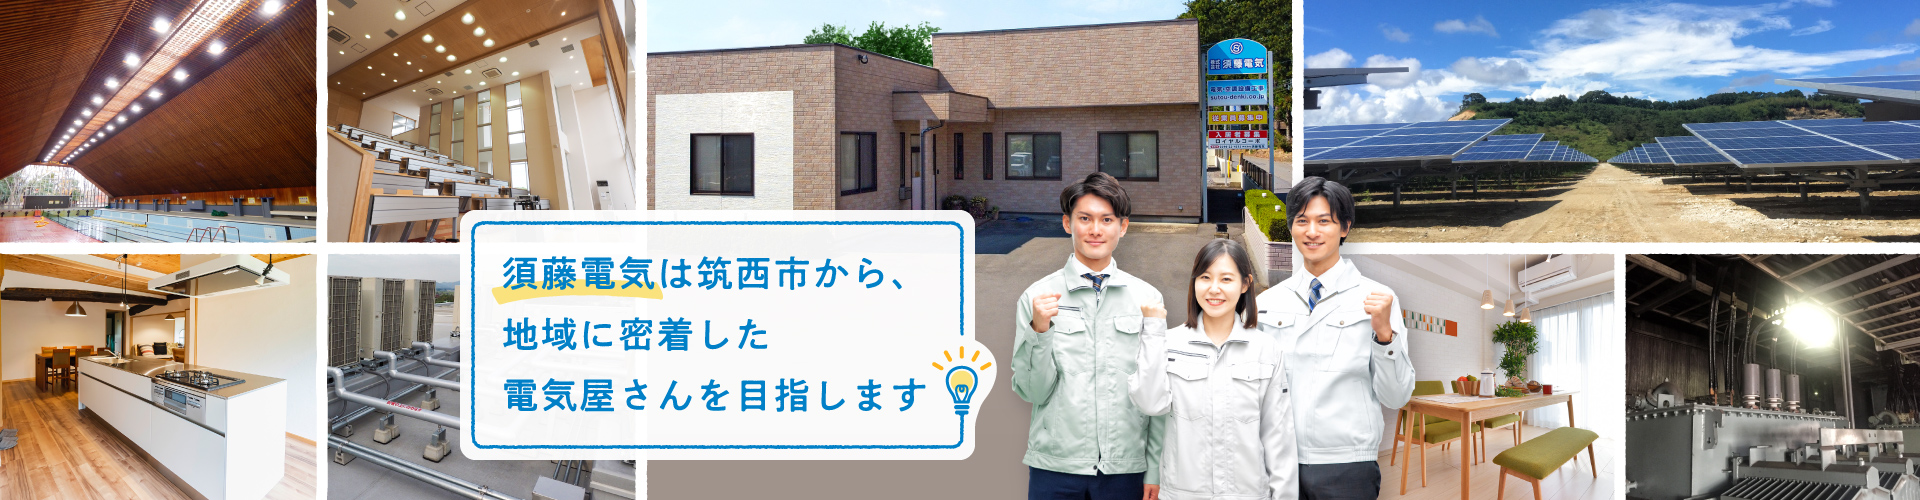 須藤電気は筑西市から、地域に密着した電気屋さんを目指します